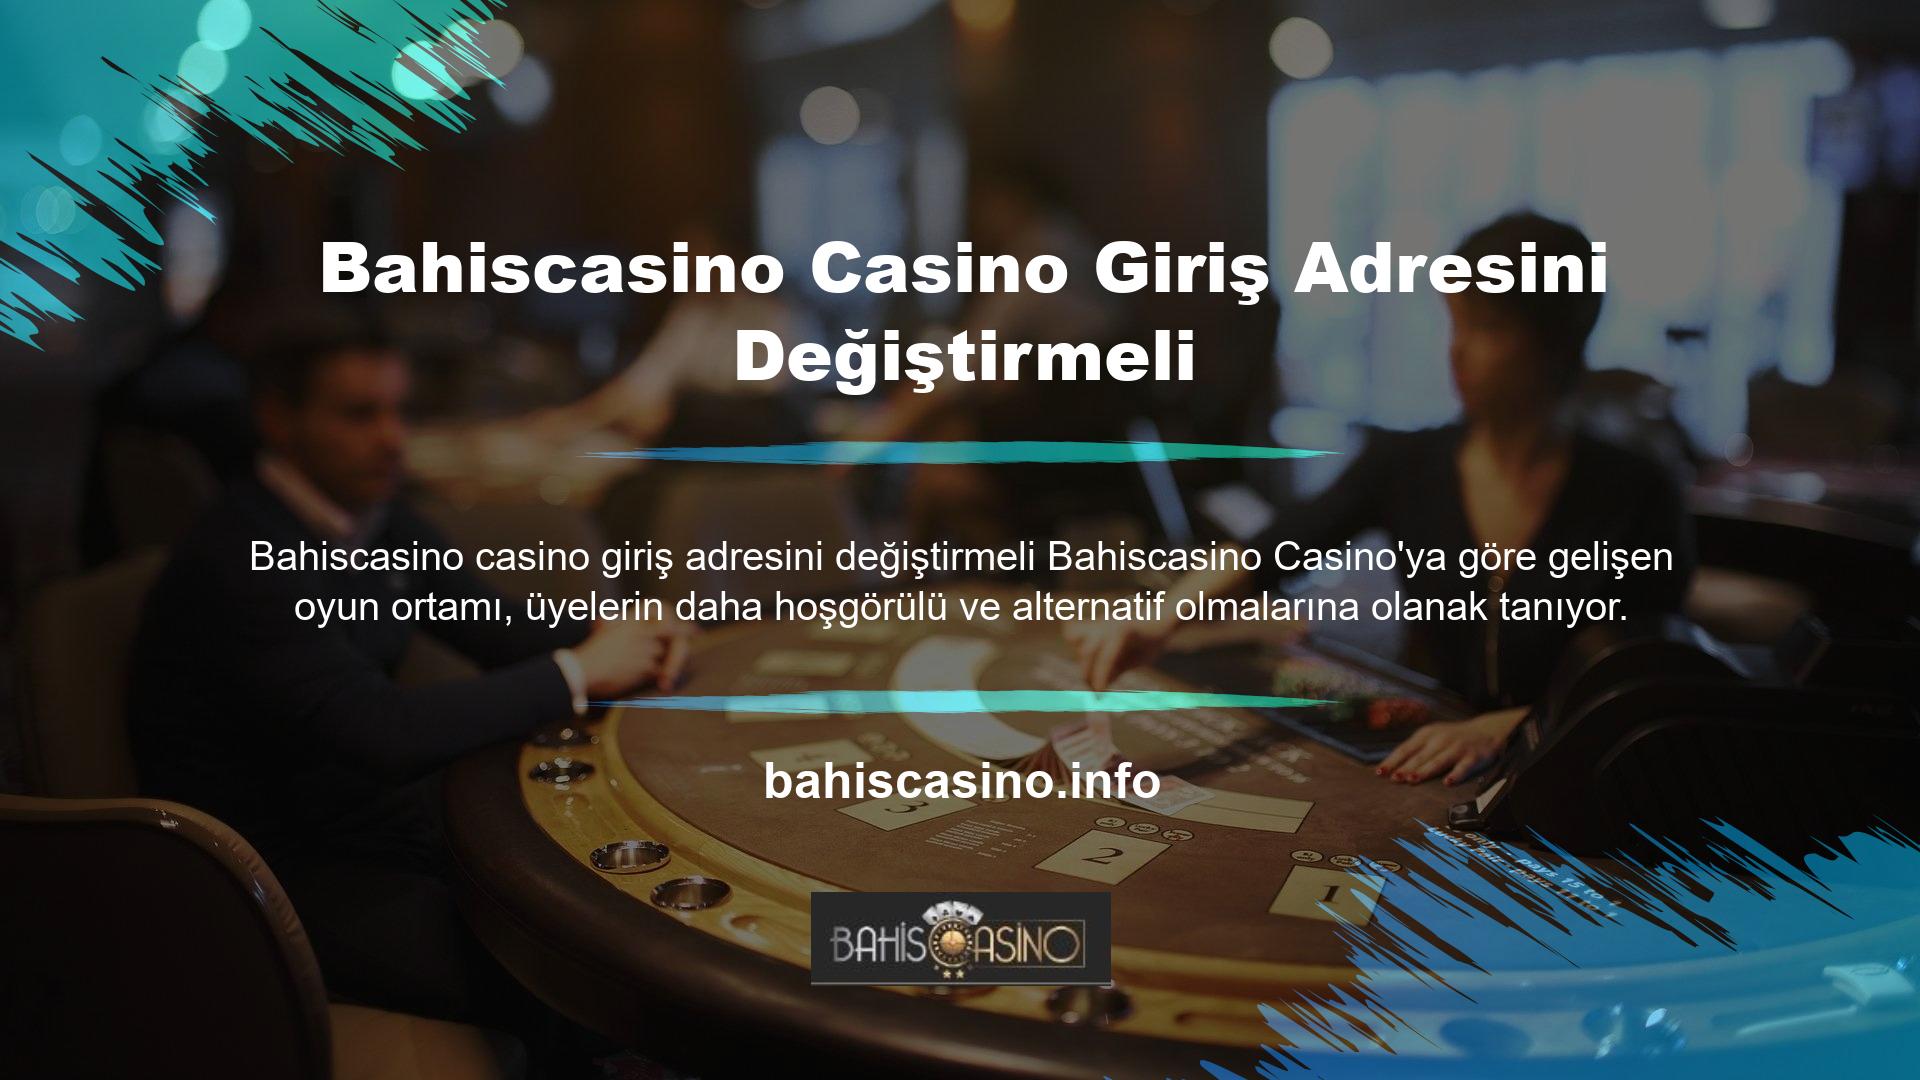 Bu casino sitelerinden biri olan Bahiscasino, yenilikçiliği ve cömertliğiyle casino sektörüne yeni bir ivme kazandırıyor